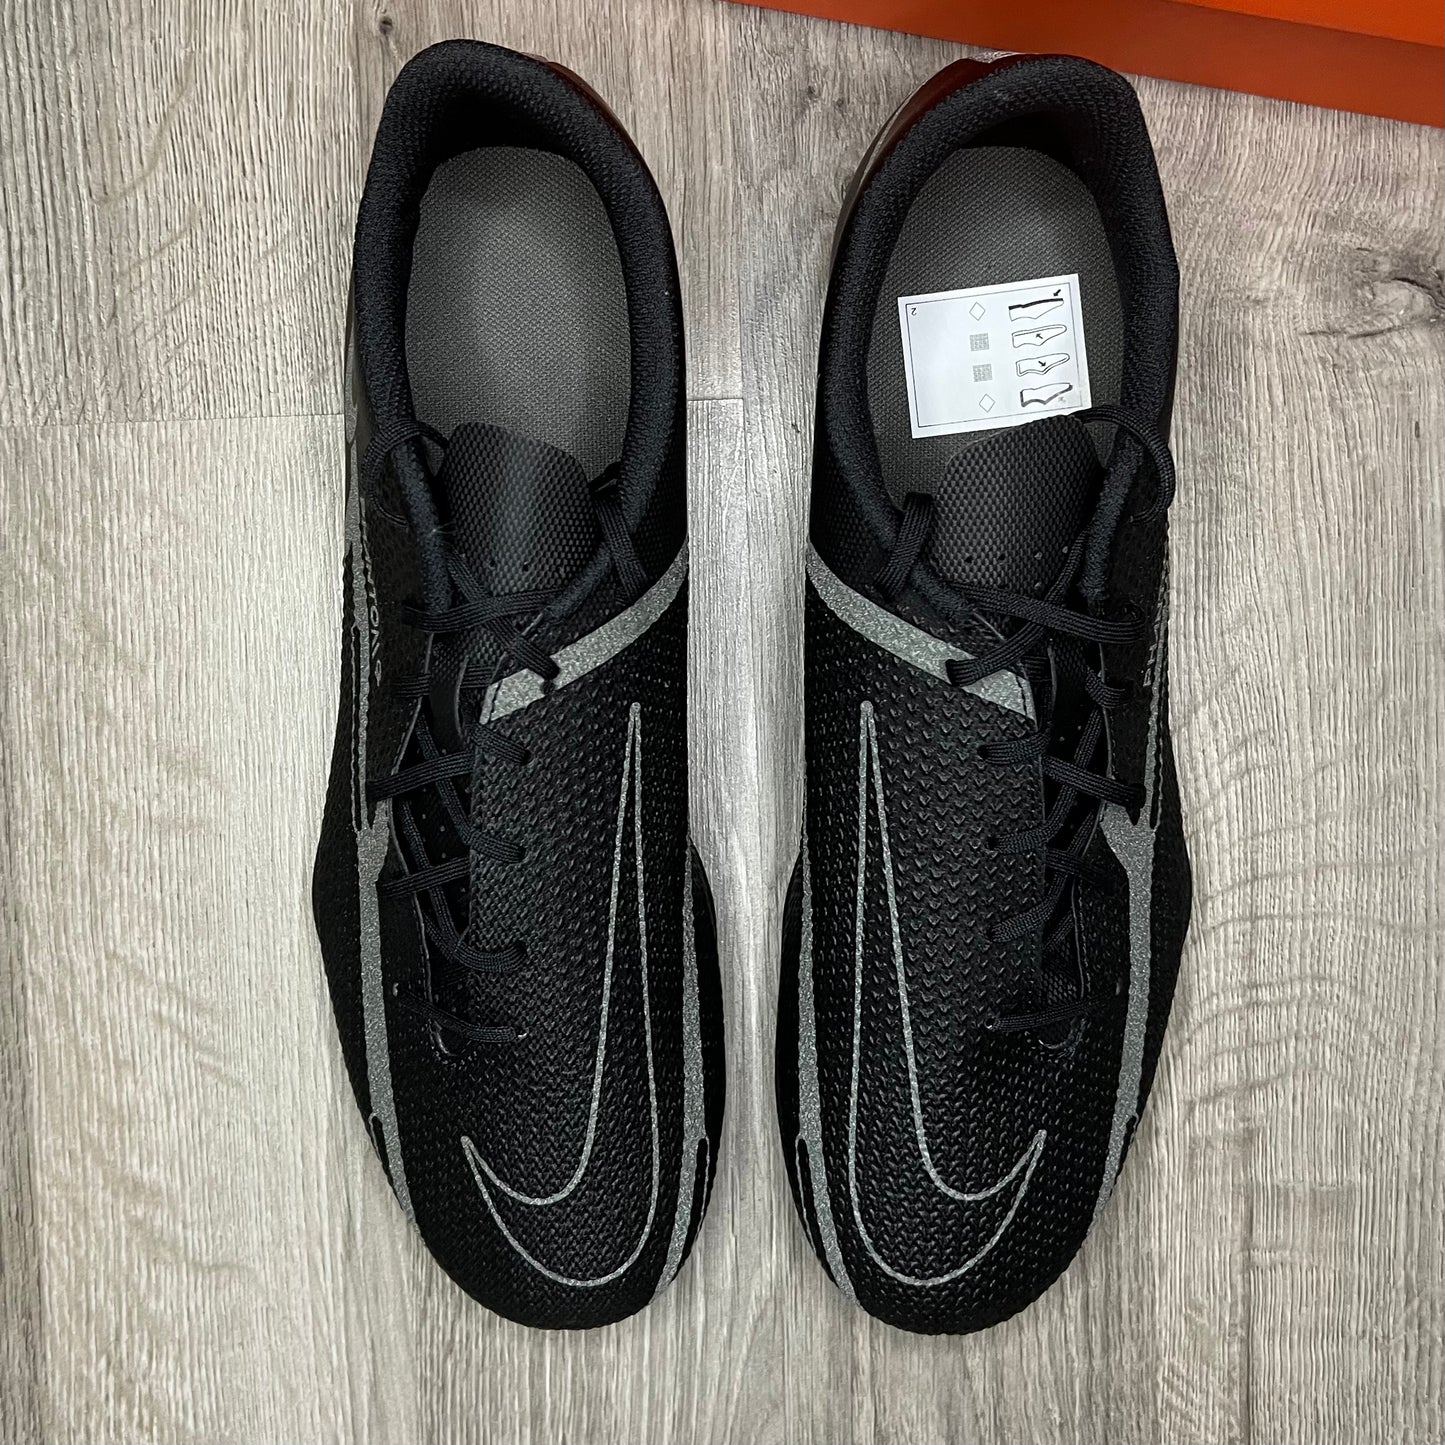 Nike Phantom GT2 Club FG/MG Black Grey Football Boots